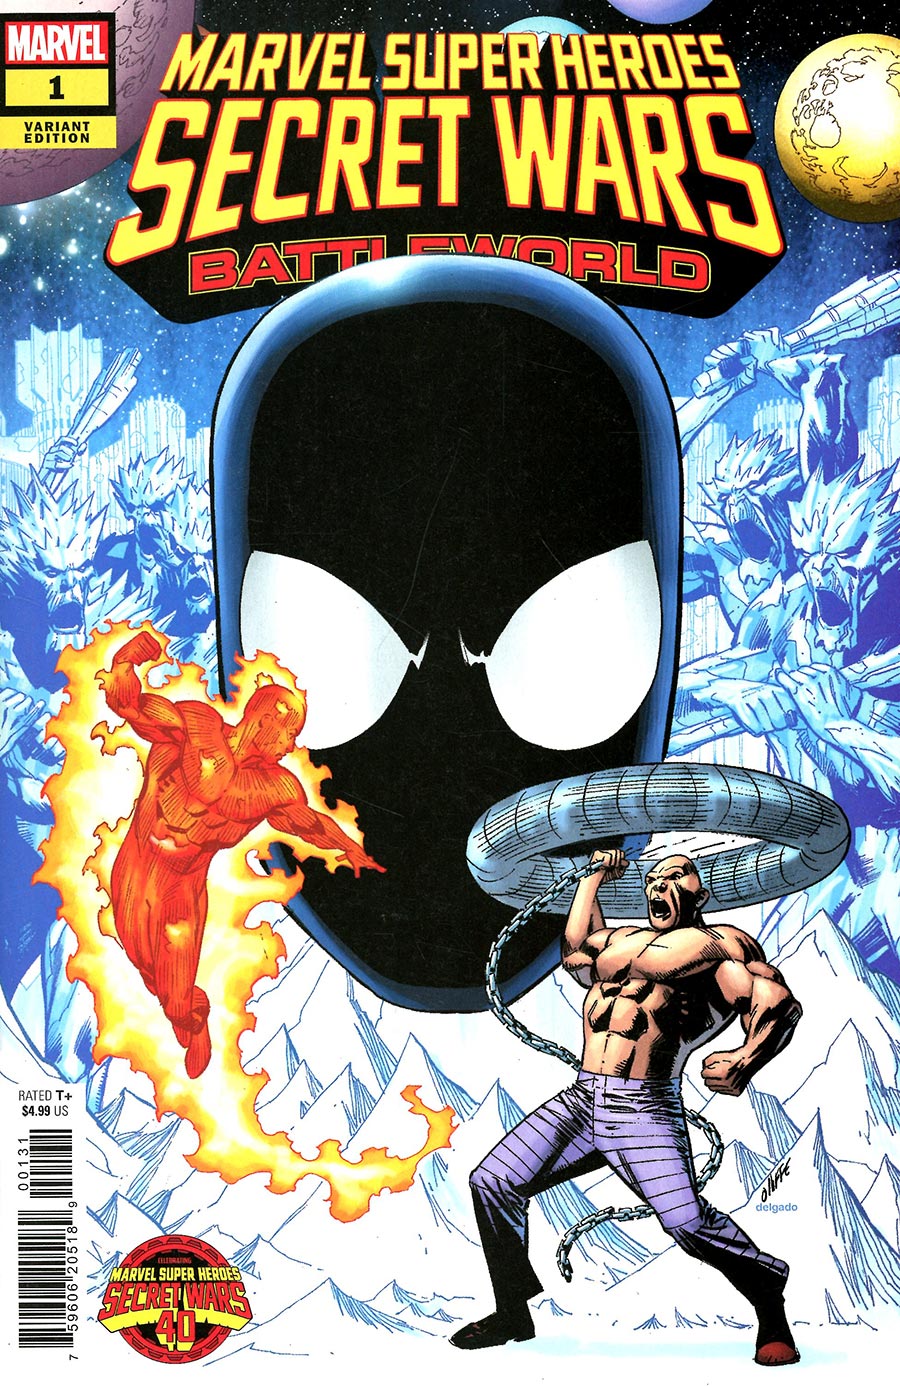 Marvel Super Heroes Secret Wars Battleworld #1 Cover D Variant Pat Olliffe Cover